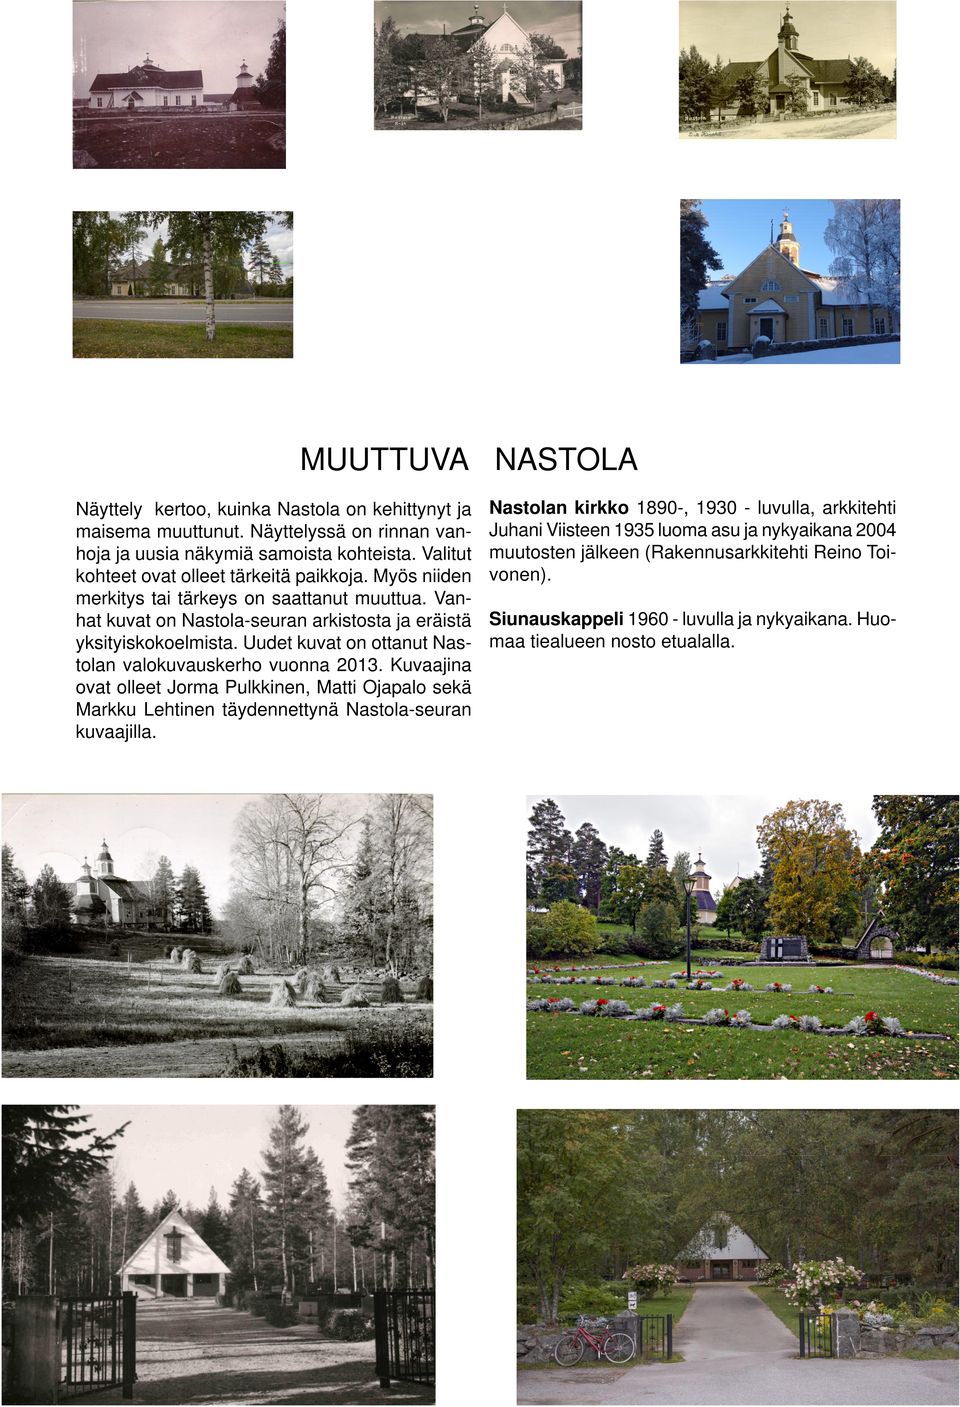 Uudet kuvat on ottanut Nastolan valokuvauskerho vuonna 2013. Kuvaajina ovat olleet Jorma Pulkkinen, Matti Ojapalo sekä Markku Lehtinen täydennettynä Nastola-seuran kuvaajilla.